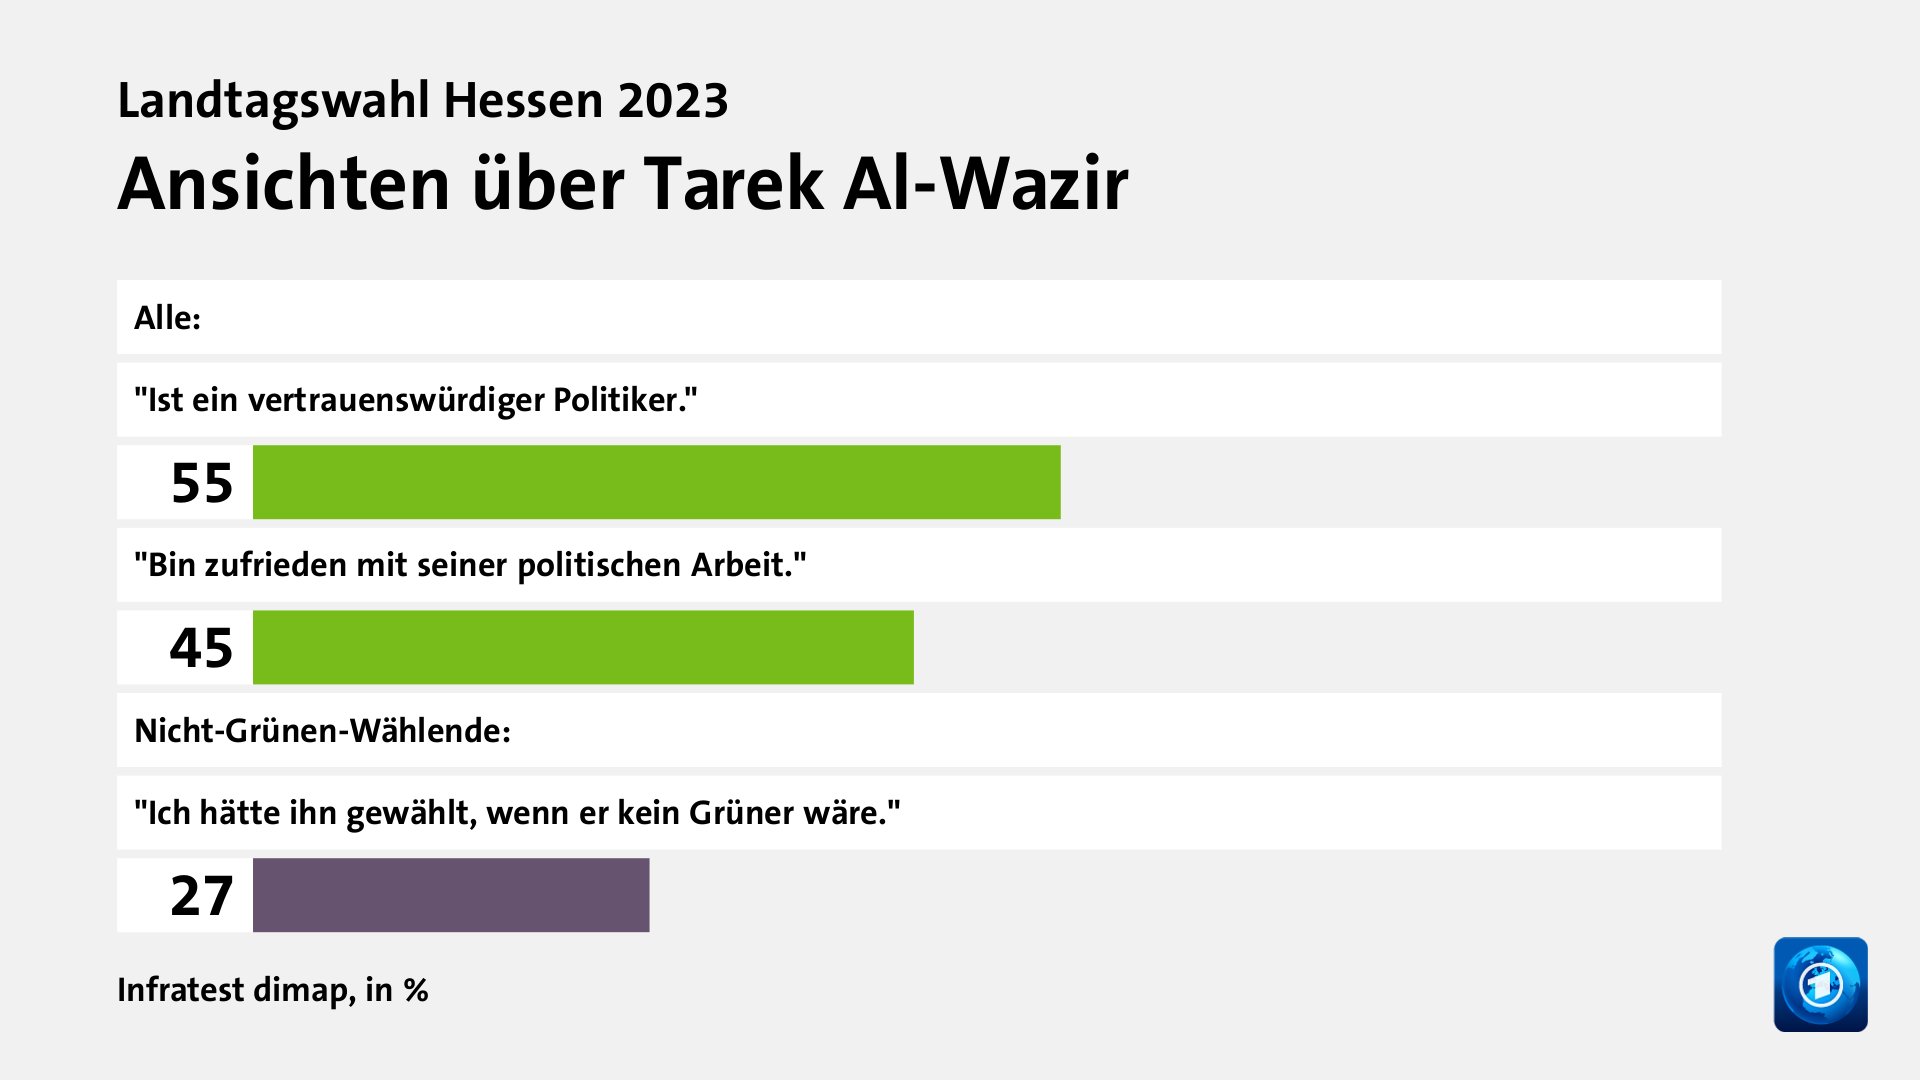 Ansichten über Tarek Al-Wazir, in %: 